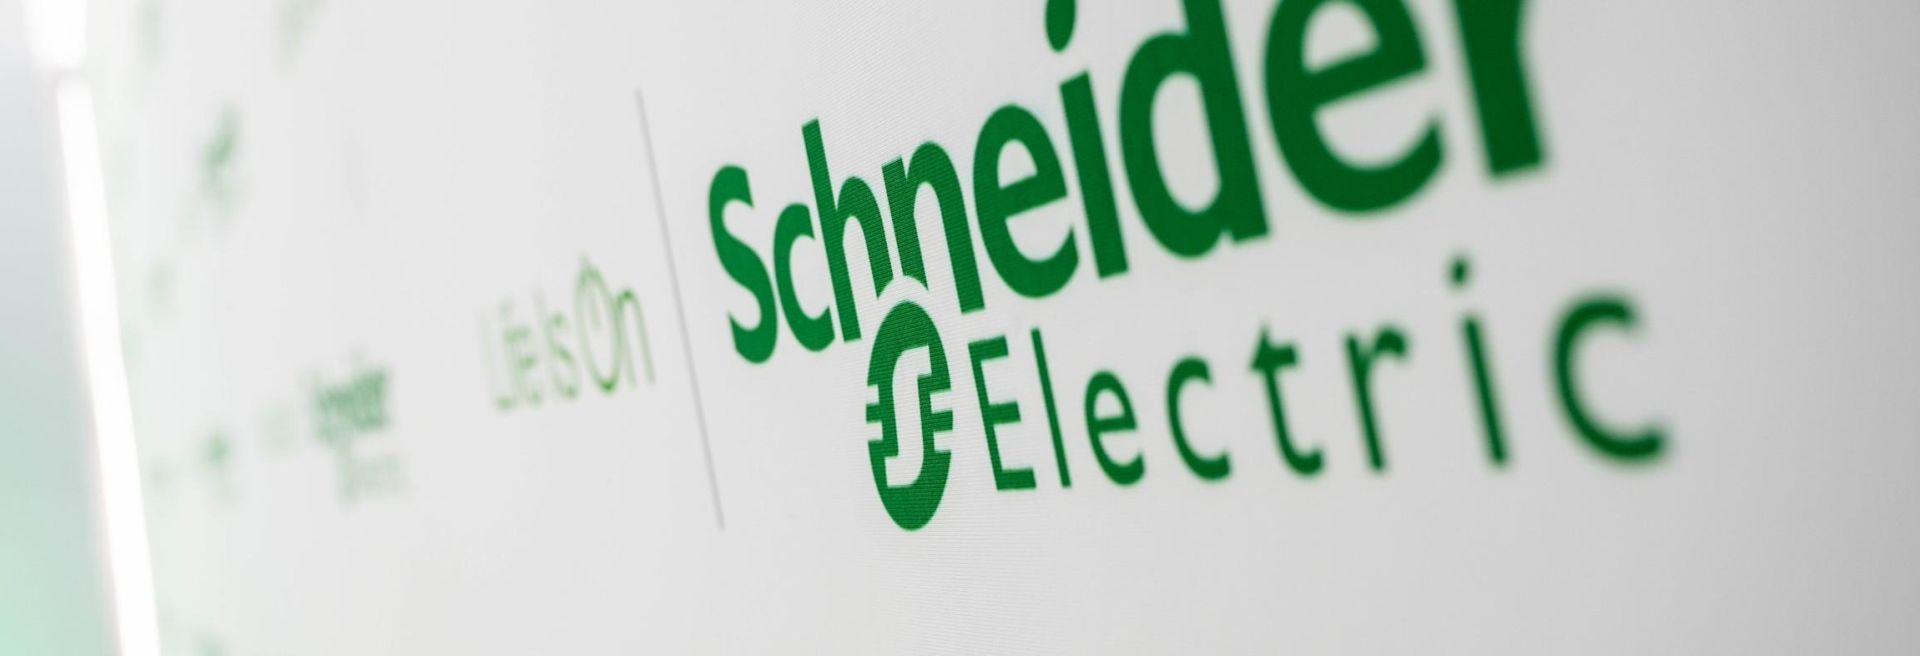 A Schneider Electric új okosgyárának köszönhetően széles körben javulhat az energiahatékonyság